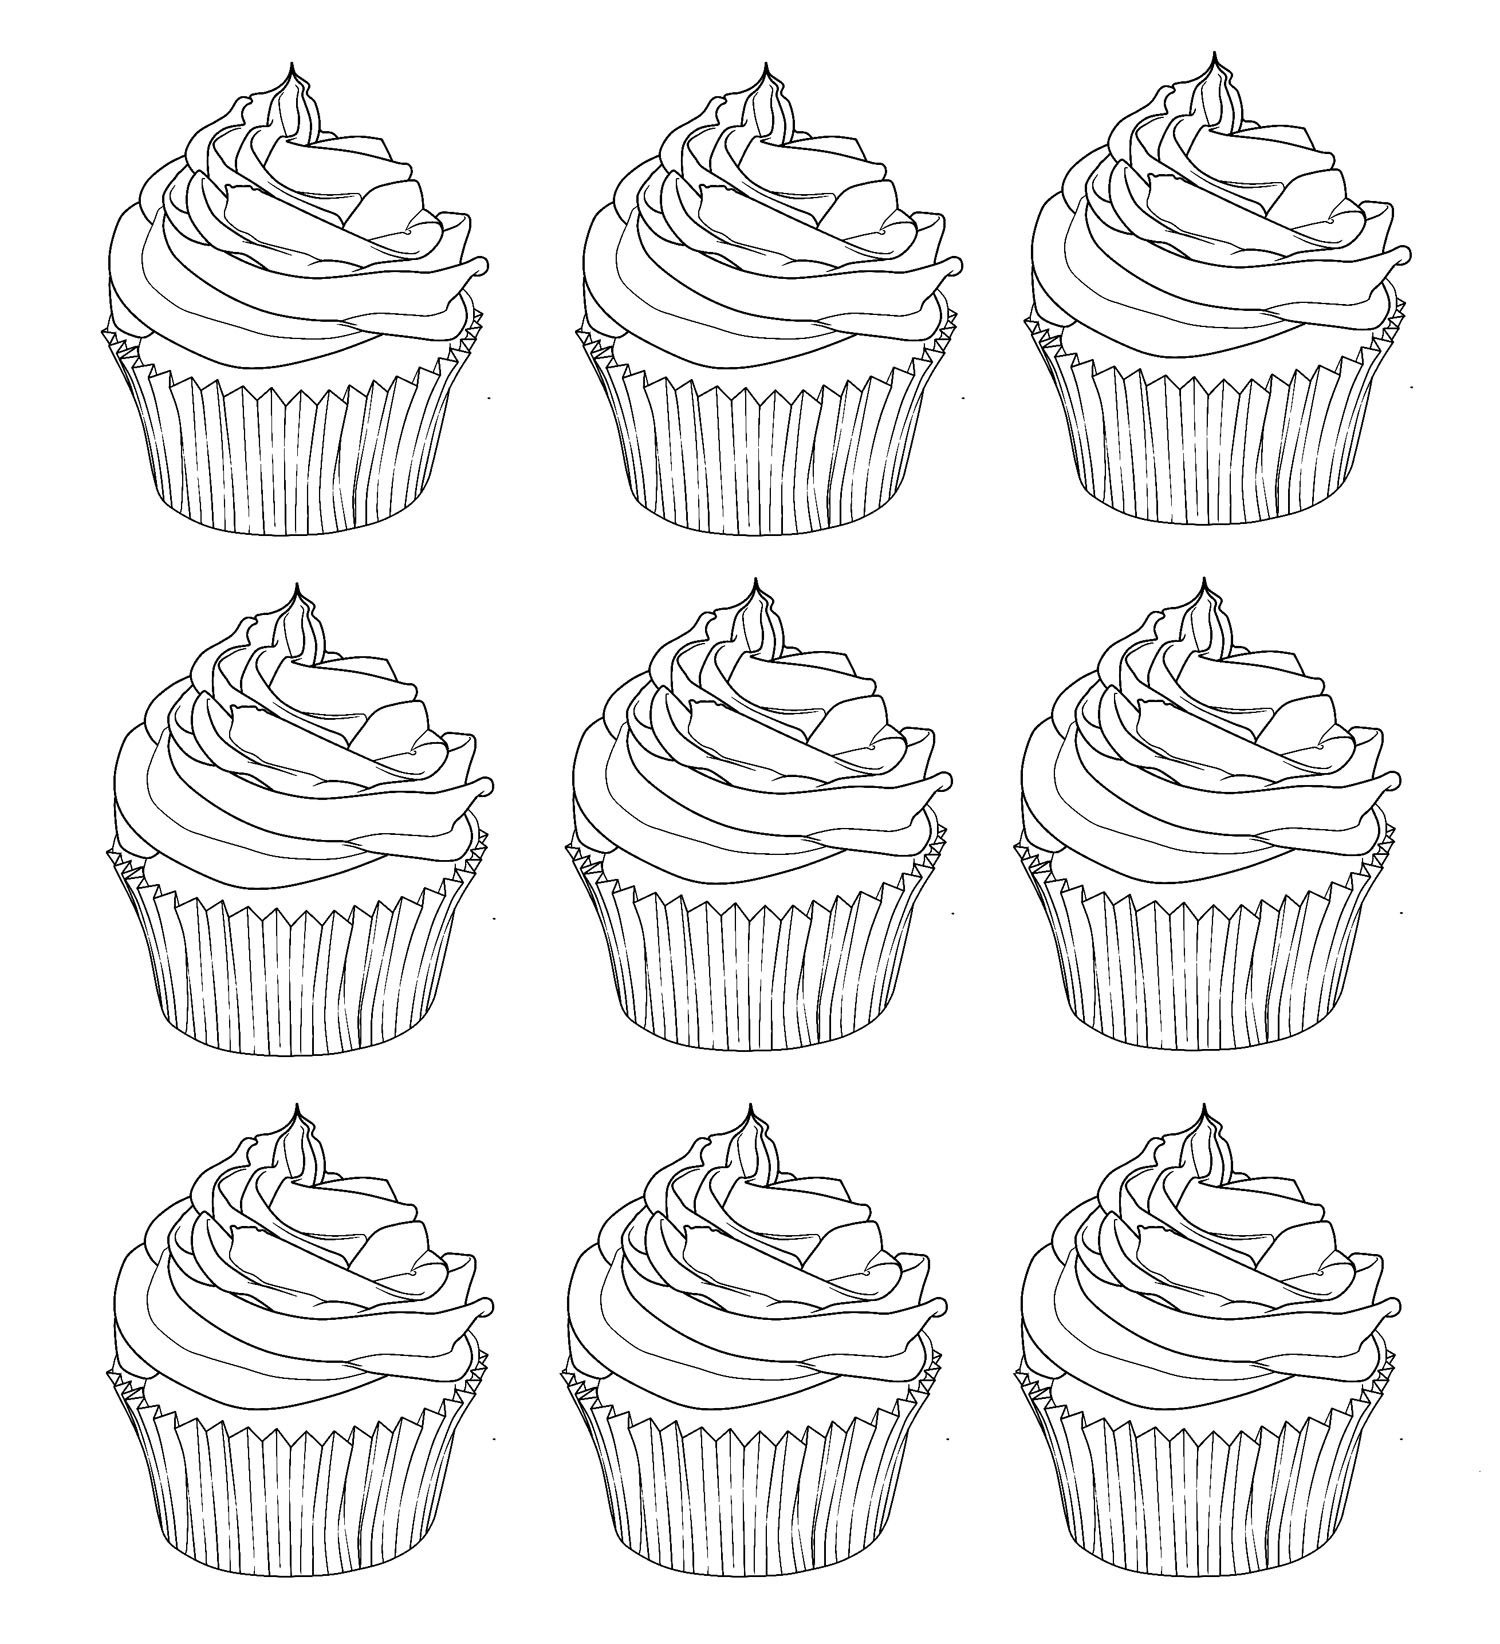 Disegni da colorare per adulti : Cup Cakes - 4